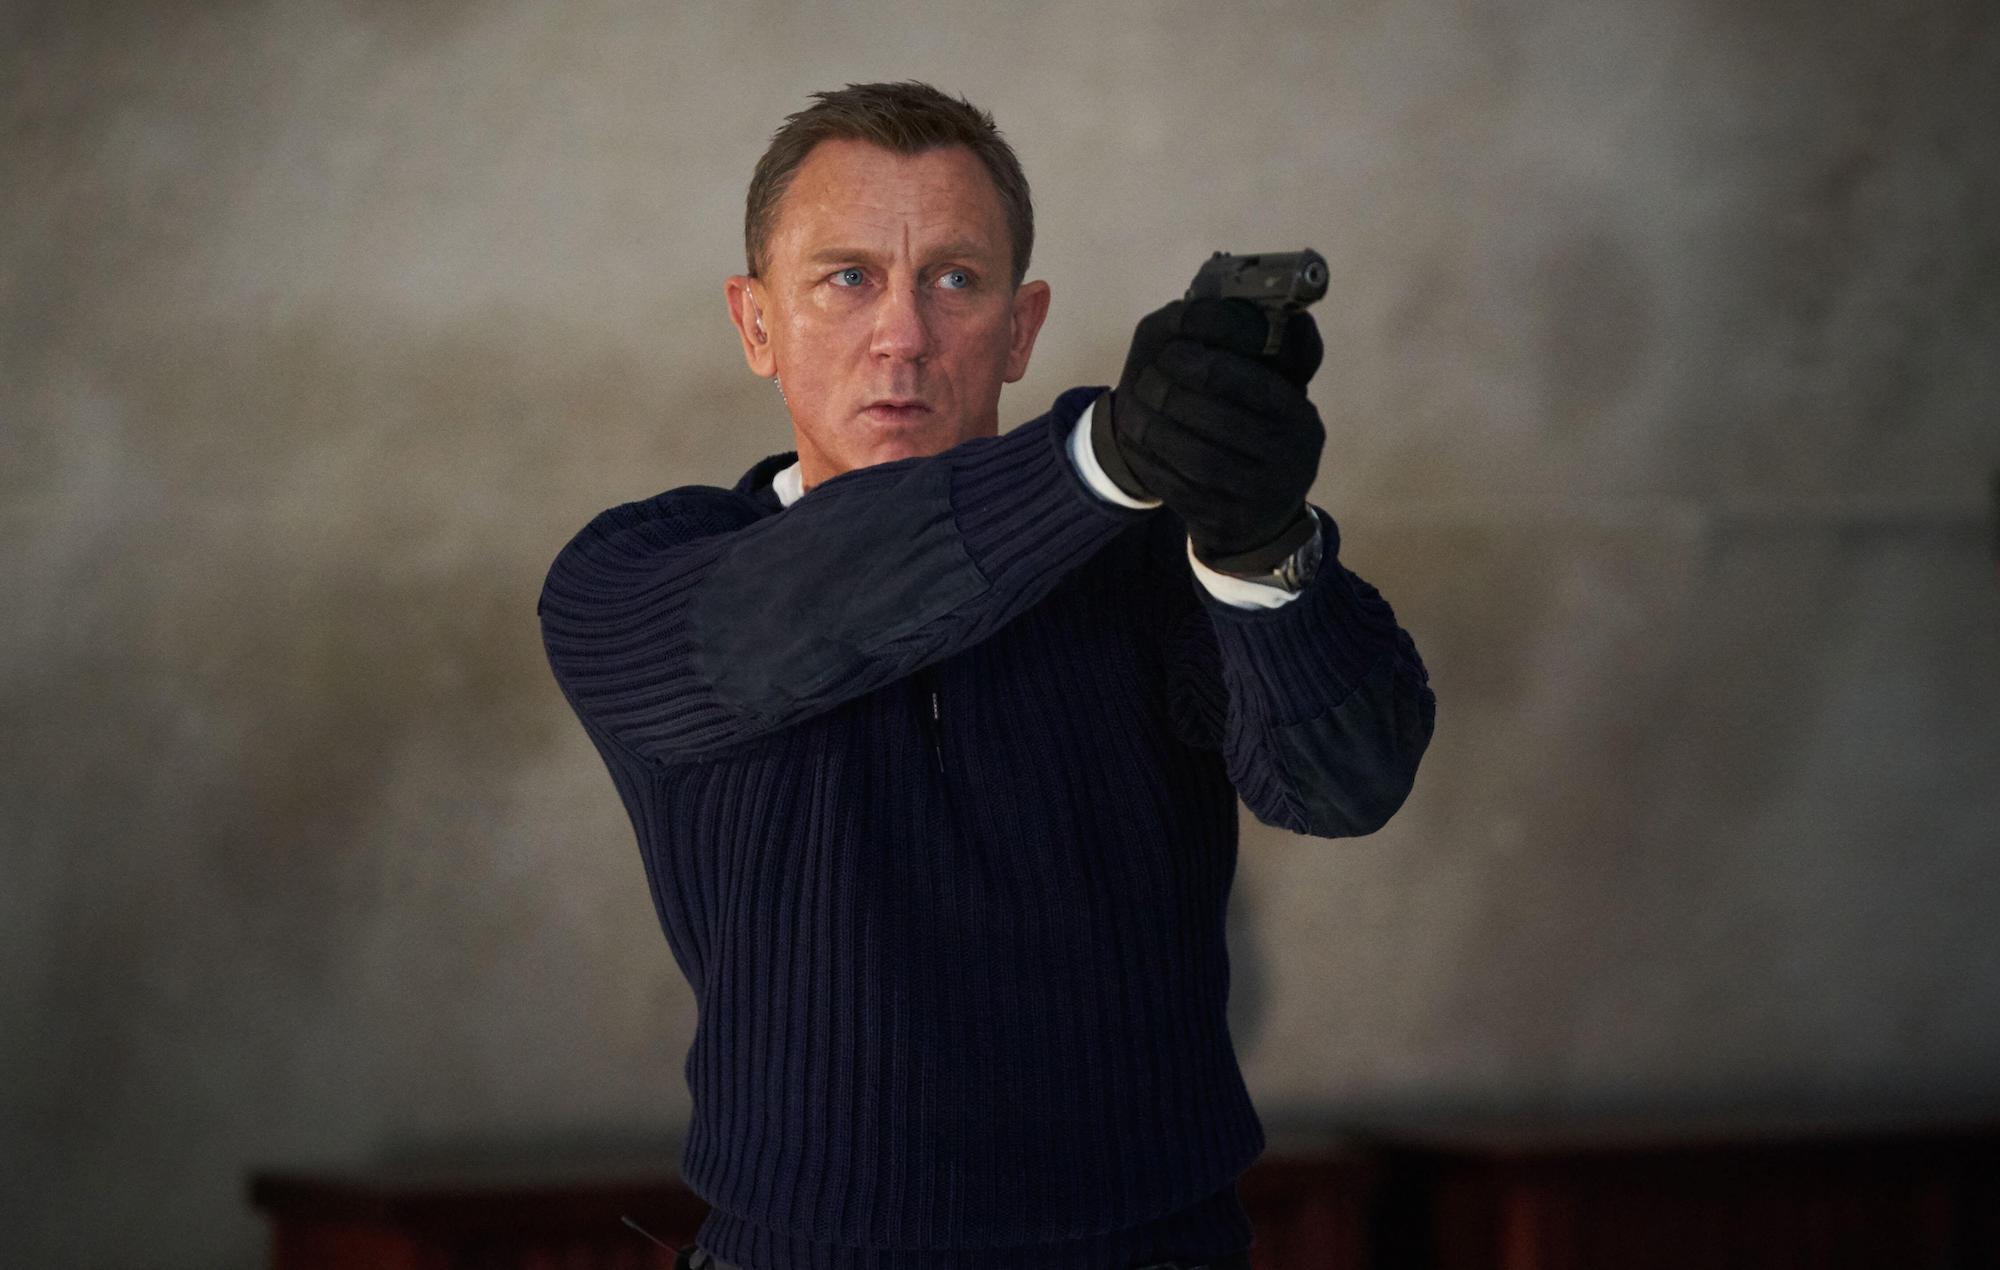 El productor de James Bond dice que el próximo 007 no será un actor joven: "Bond ya es un veterano"